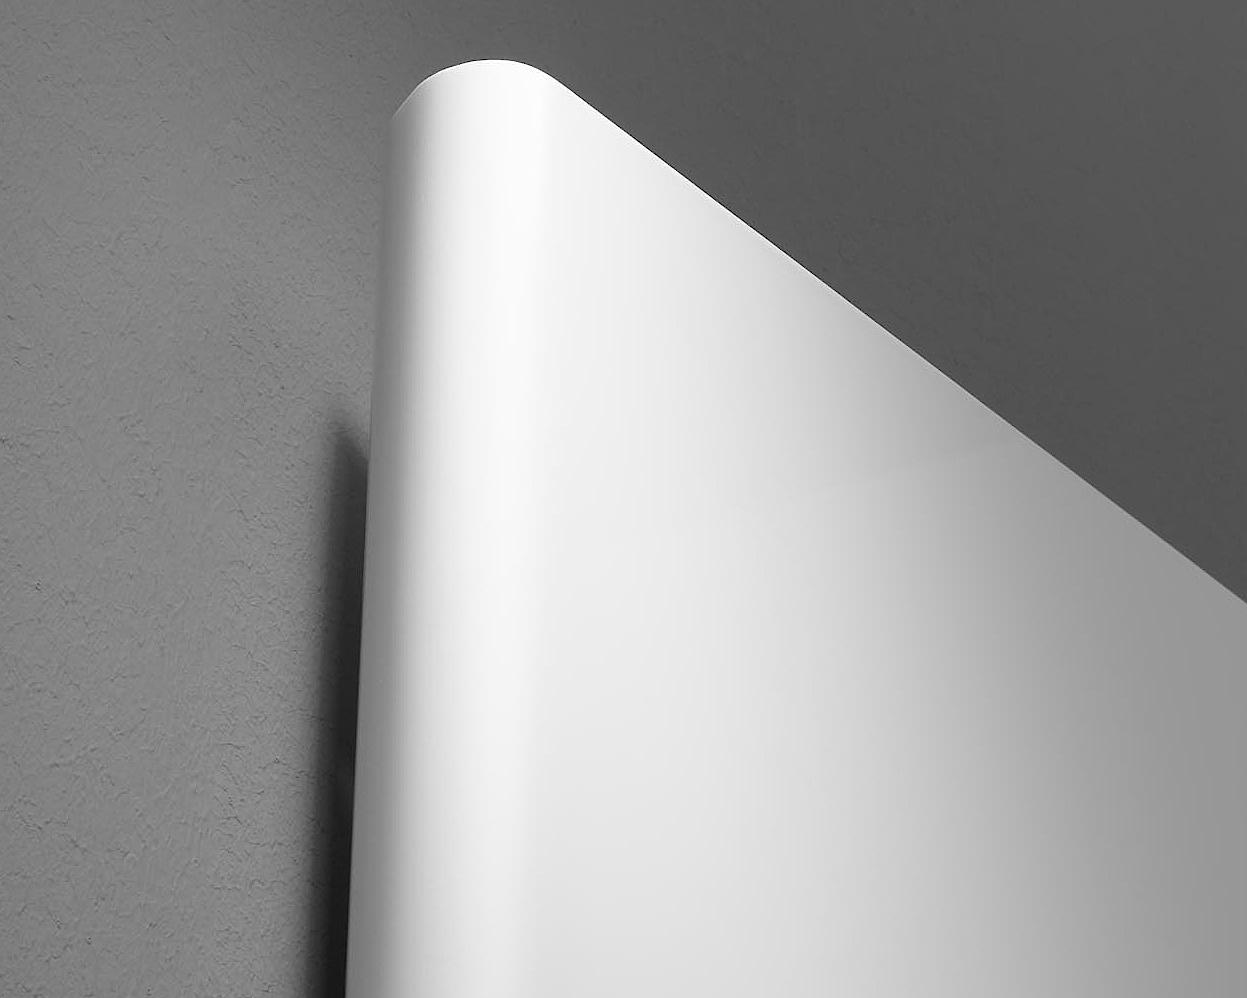 Il radiatore da bagno e di design Kermi Pateo offre attraverso il design semplice e piatto bordi arrotondati tra pannello frontale e laterale.